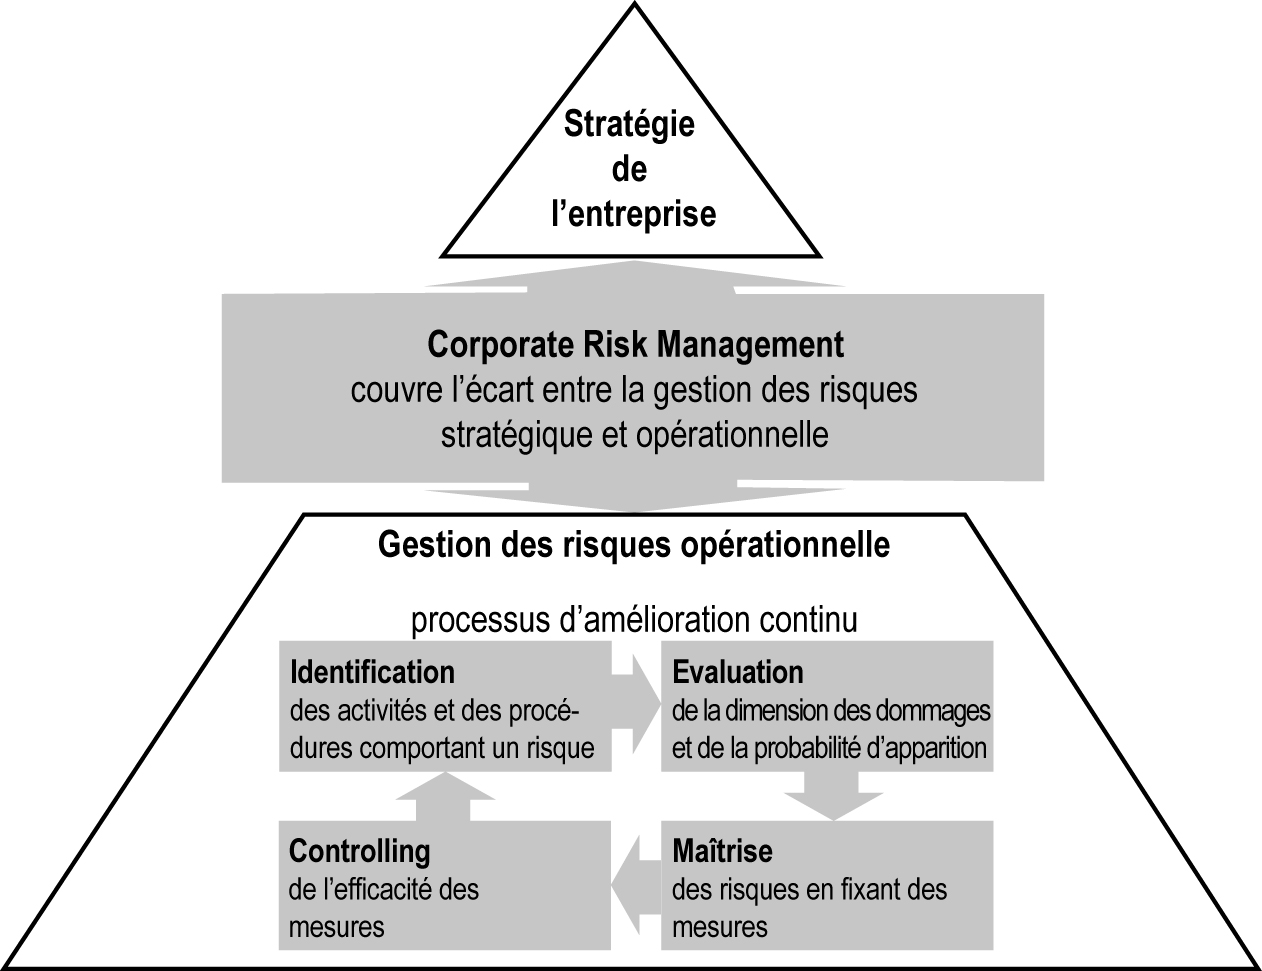 Schéma. Montre que le Corporate Risk Management couvre l'écart entre la gestion des risques stratégiques et opérationnels